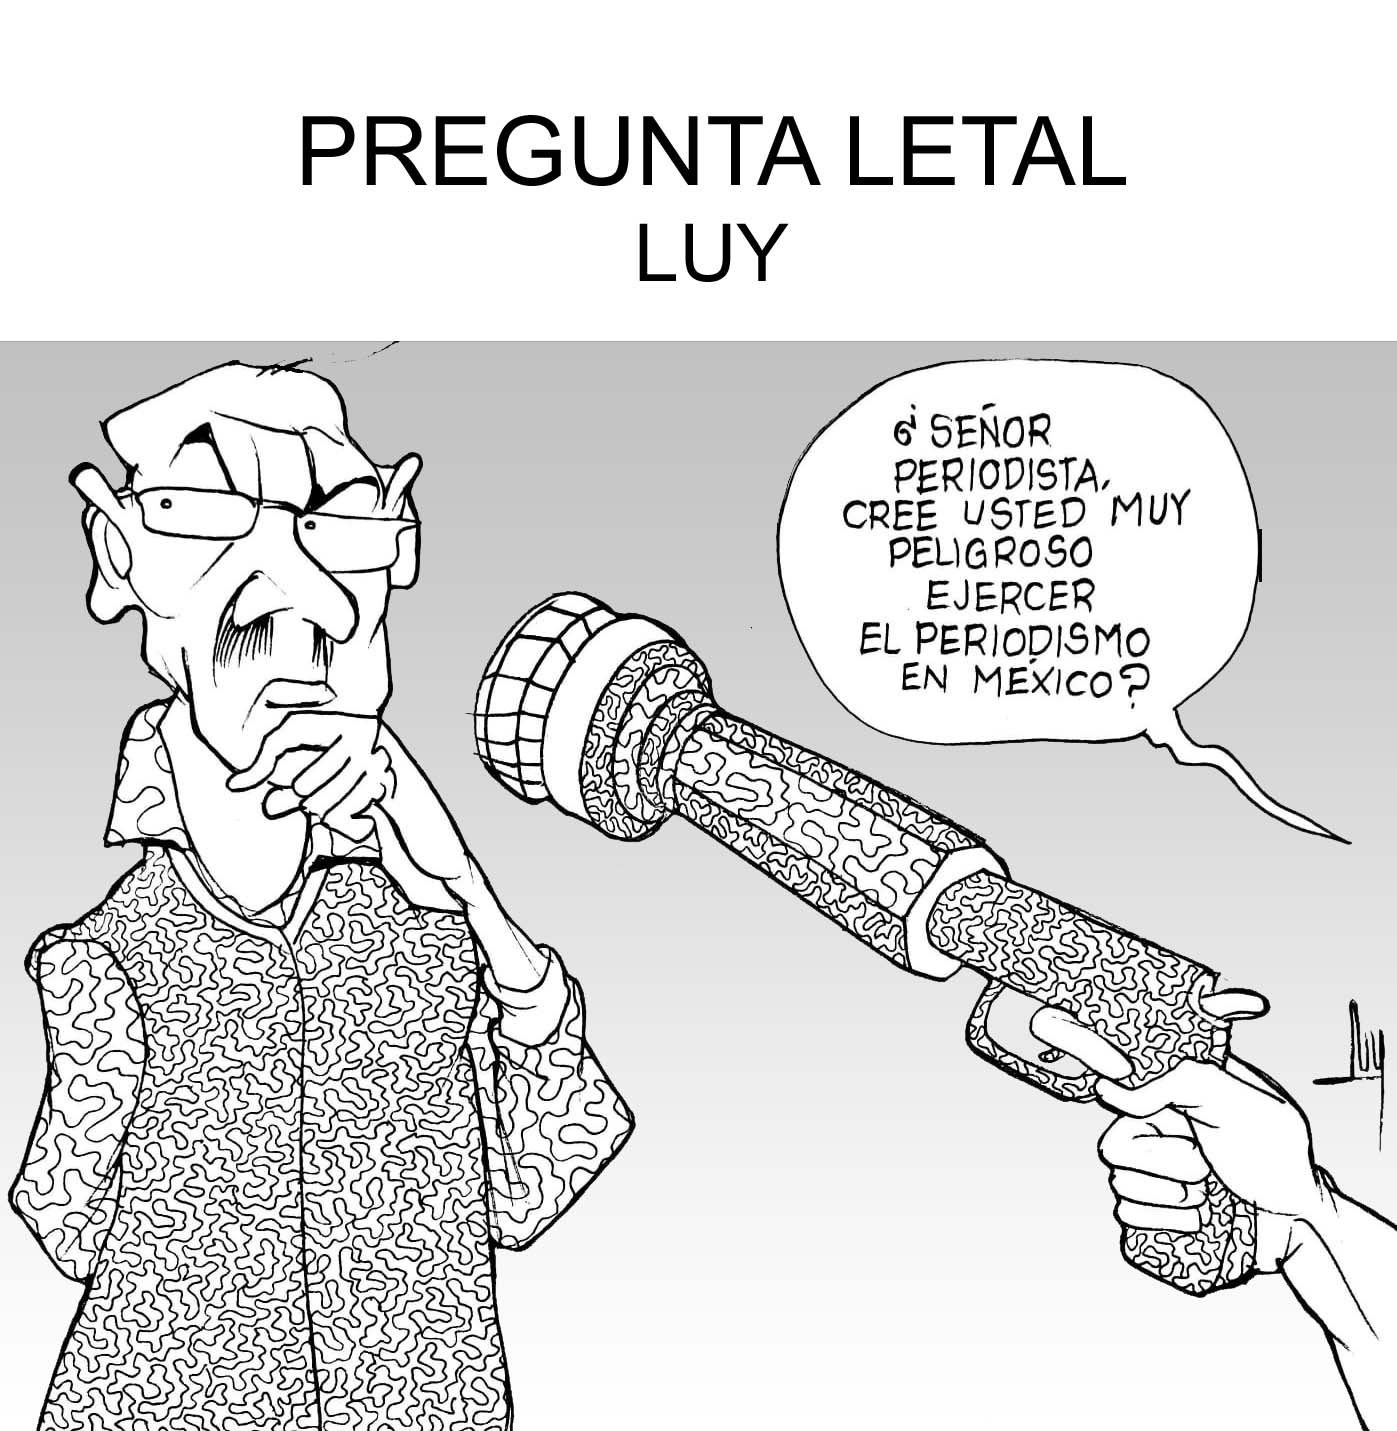 PREGUNTA LETAL-LUY